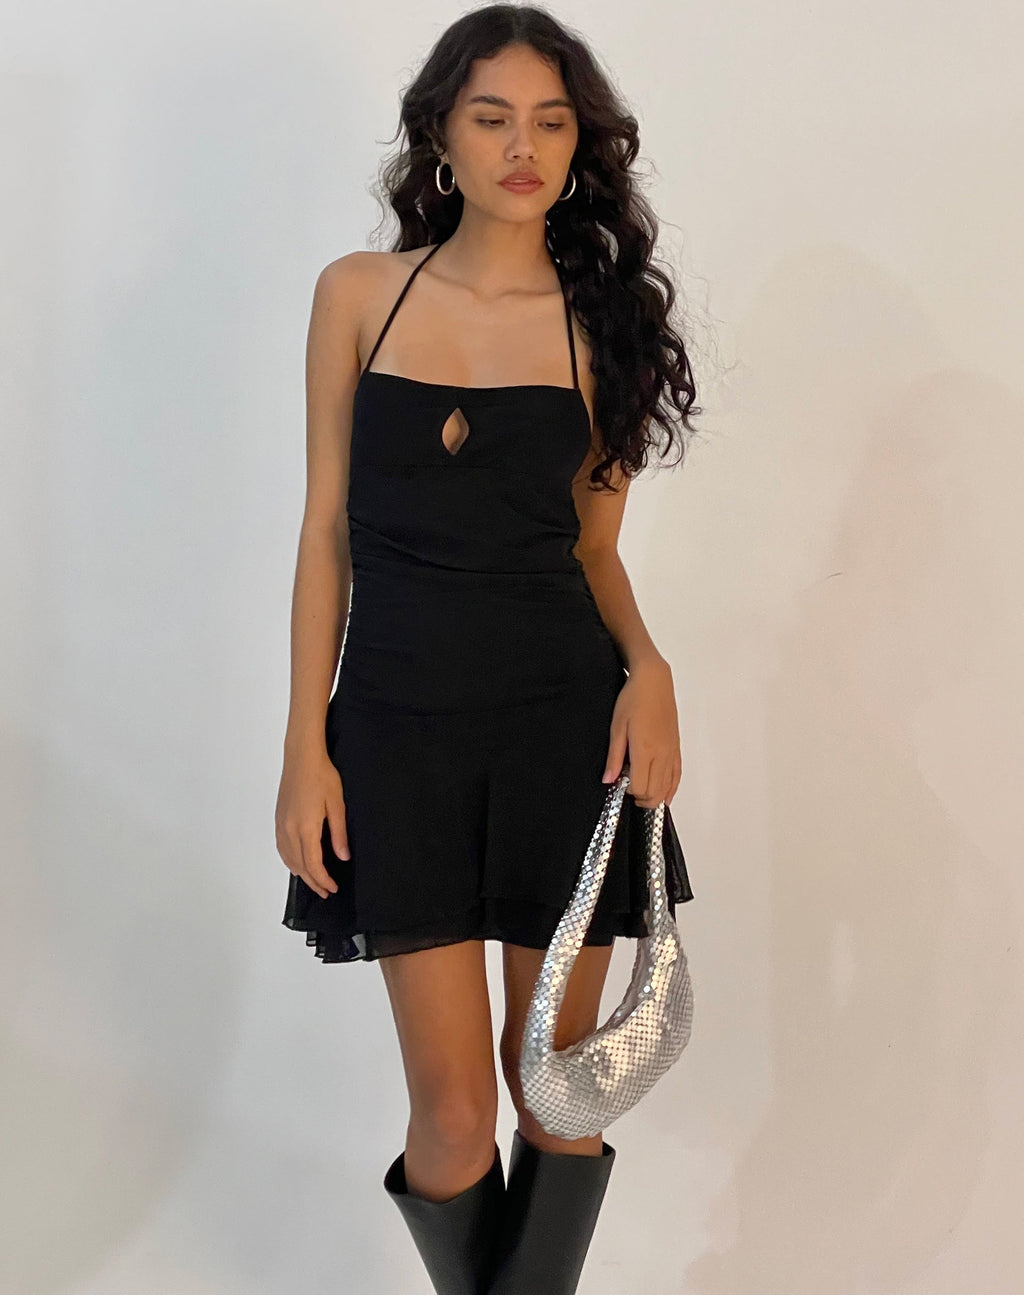 Pixila Halterneck Mini Dress in Black Mesh